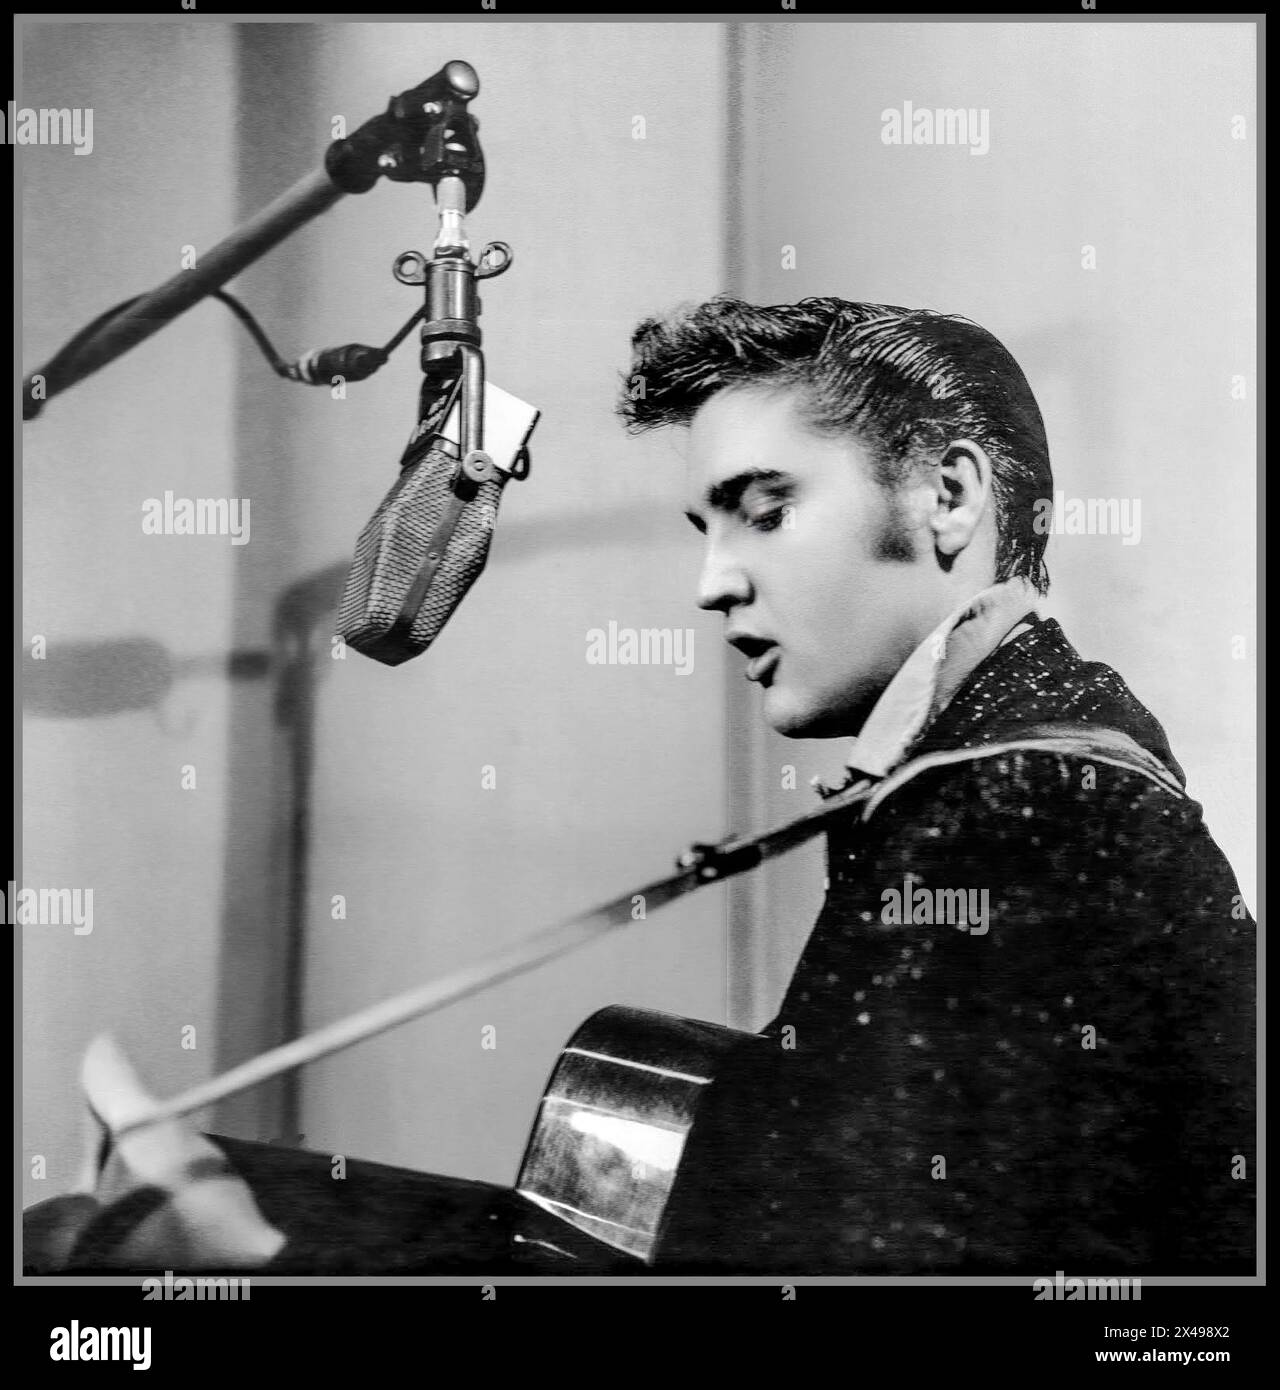 ELVIS PRESLEY iconico pop star negli anni '1950 all'inizio della sua carriera, cantando e suonando la sua chitarra in uno studio di registrazione con microfono dell'epoca. Hollywood USA Foto Stock